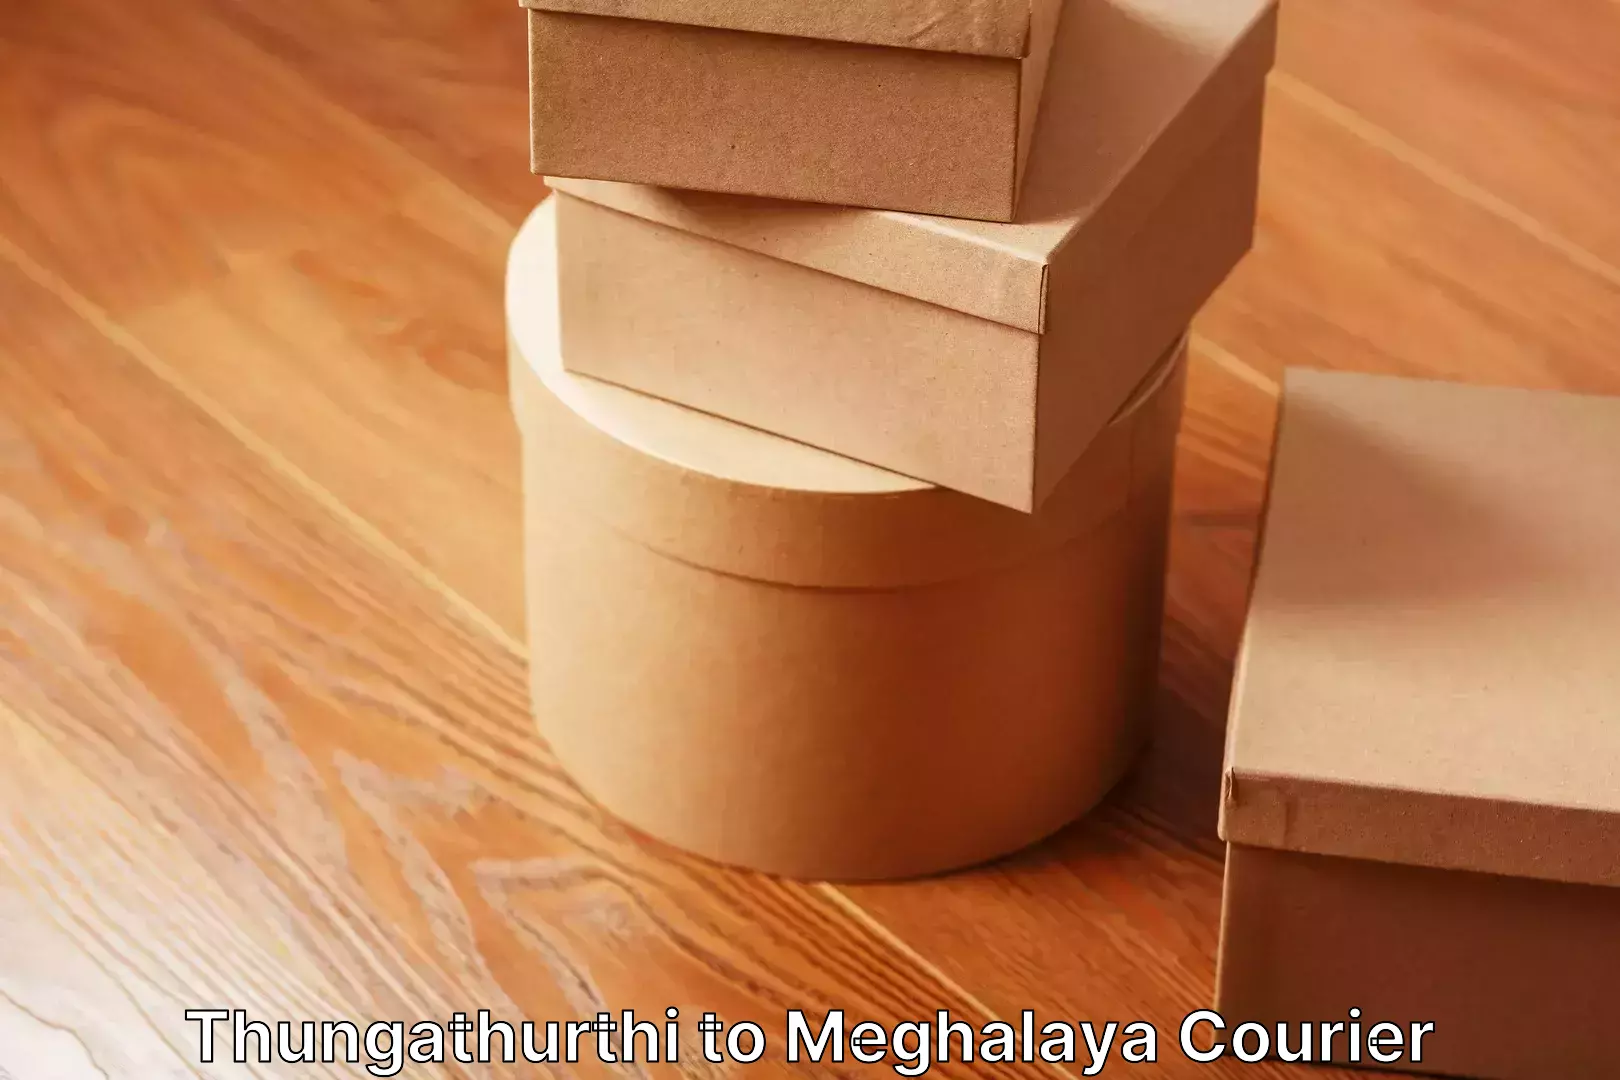 Stress-free household moving in Thungathurthi to Meghalaya